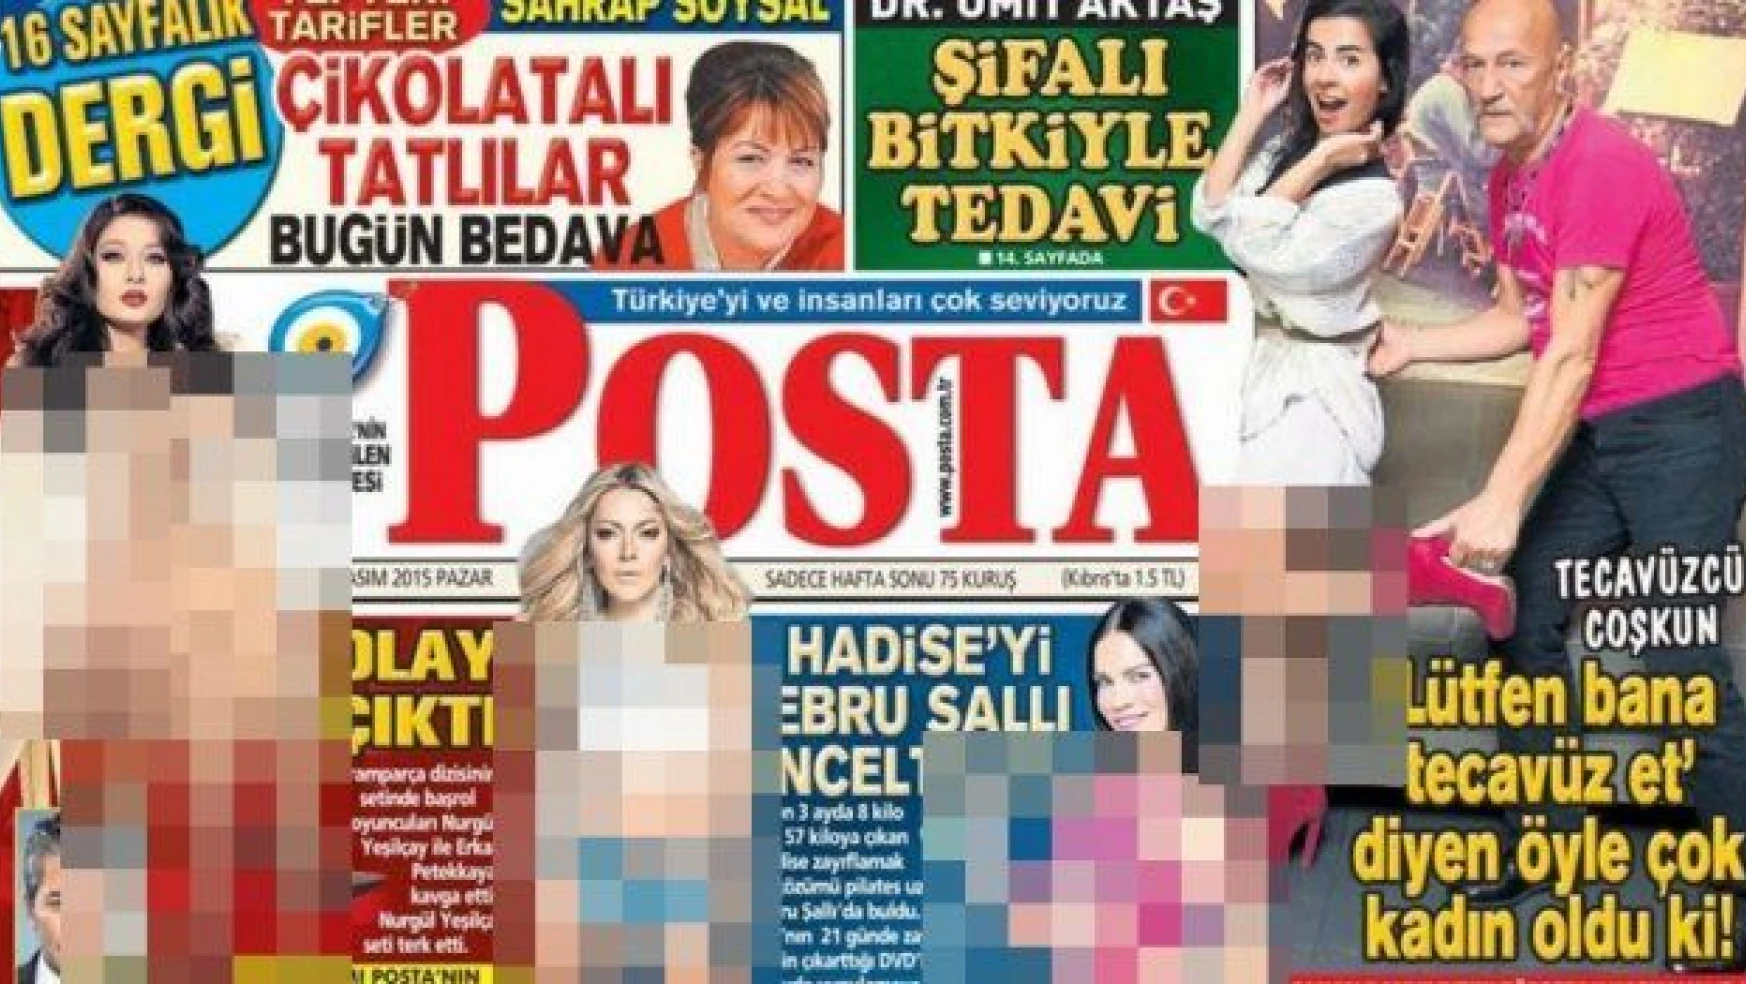 Aydın Doğan'ın gazetesi Posta'dan tecavüze övgü!